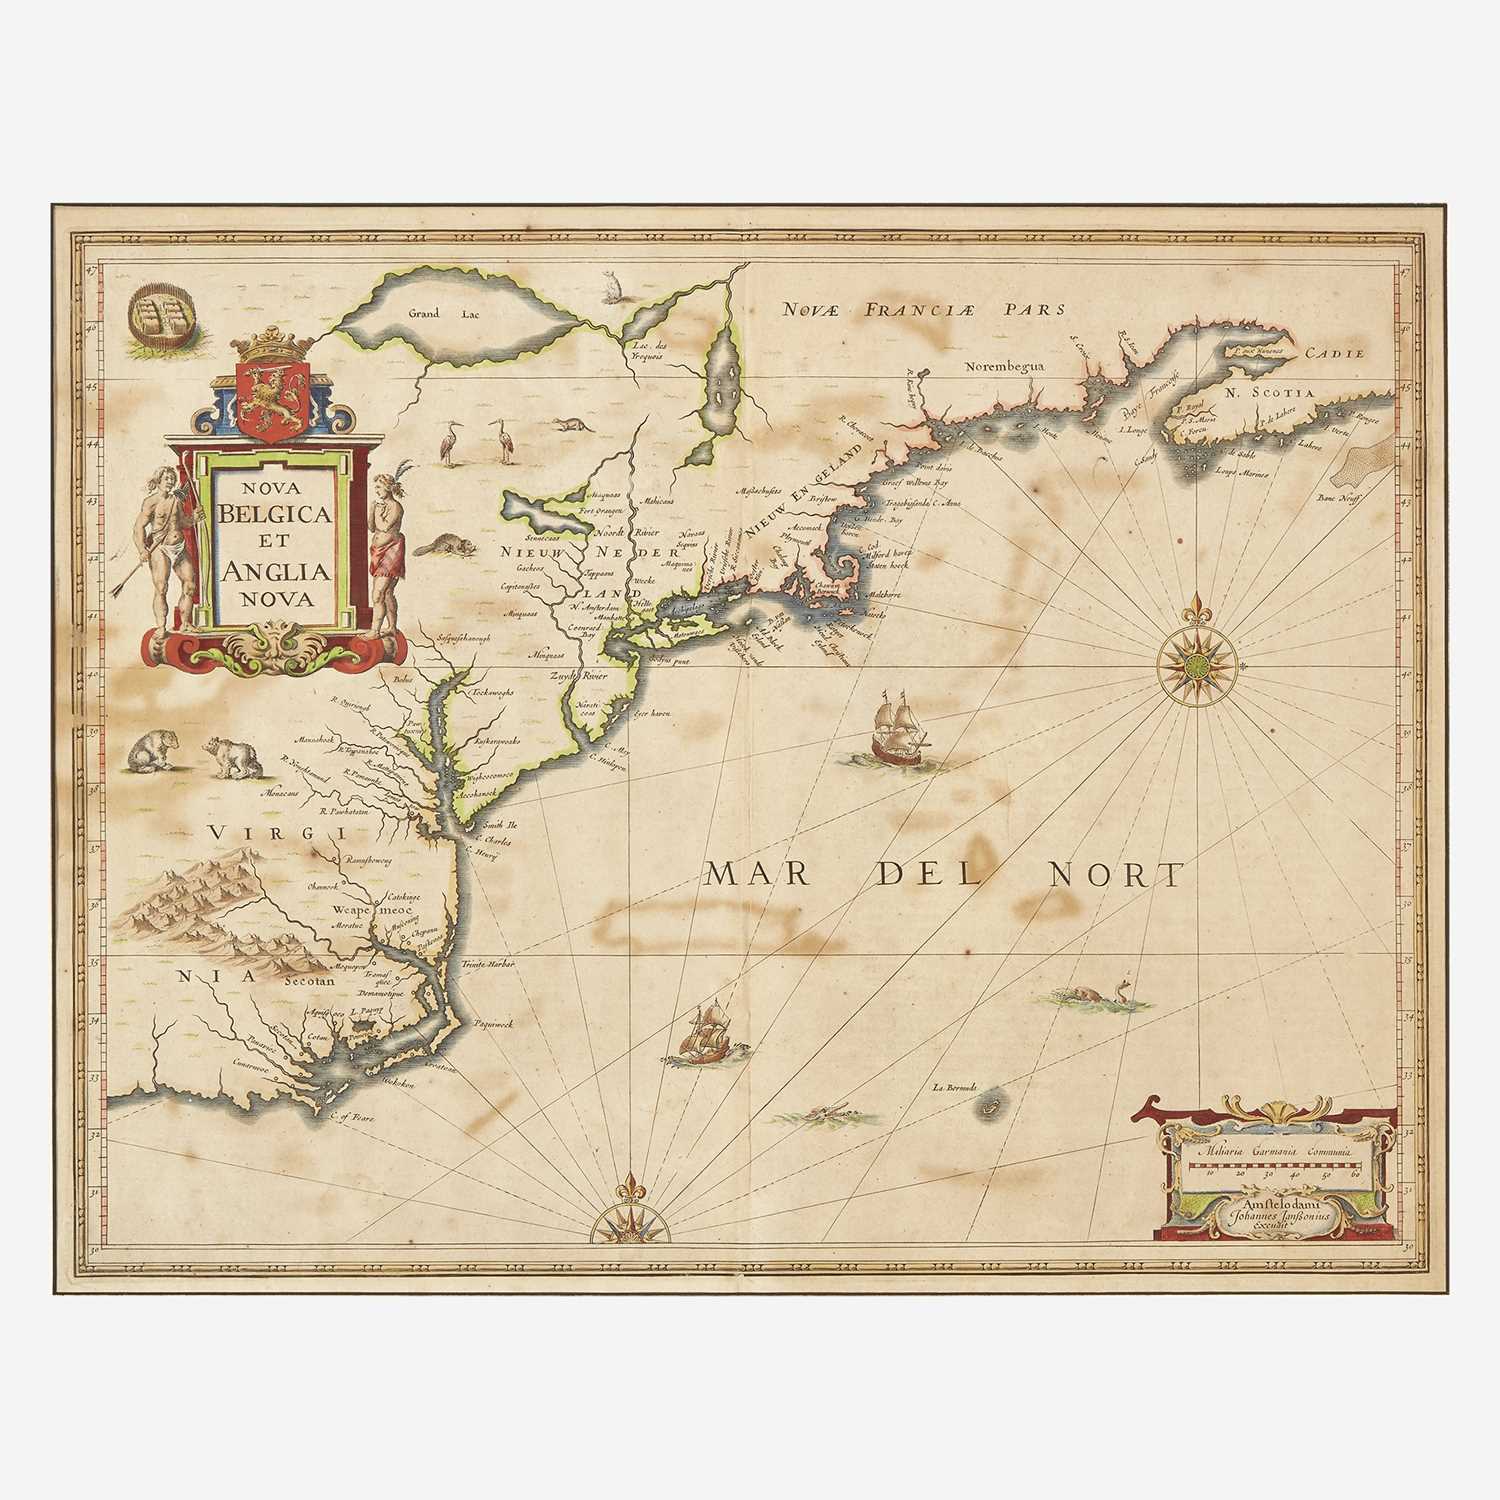 Lot 85 - [Maps & Atlases] Janssonius, Johannes